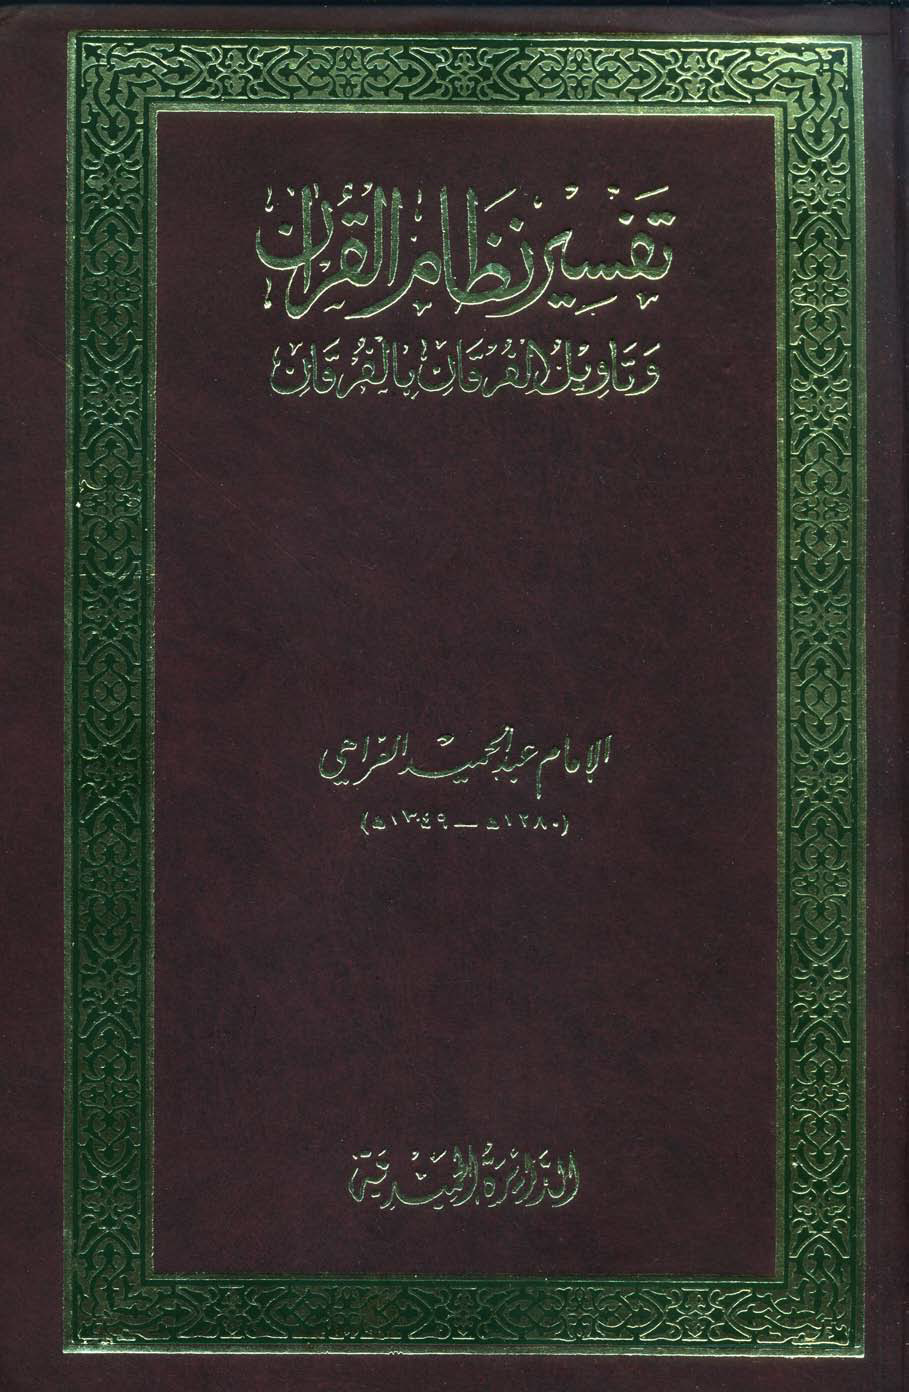 تحميل كتاب تفسير نظام القرآن وتأويل الفرقان بالفرقان لـِ: الشيخ عبد الحميد الفراهي الهندي (ت 1349)